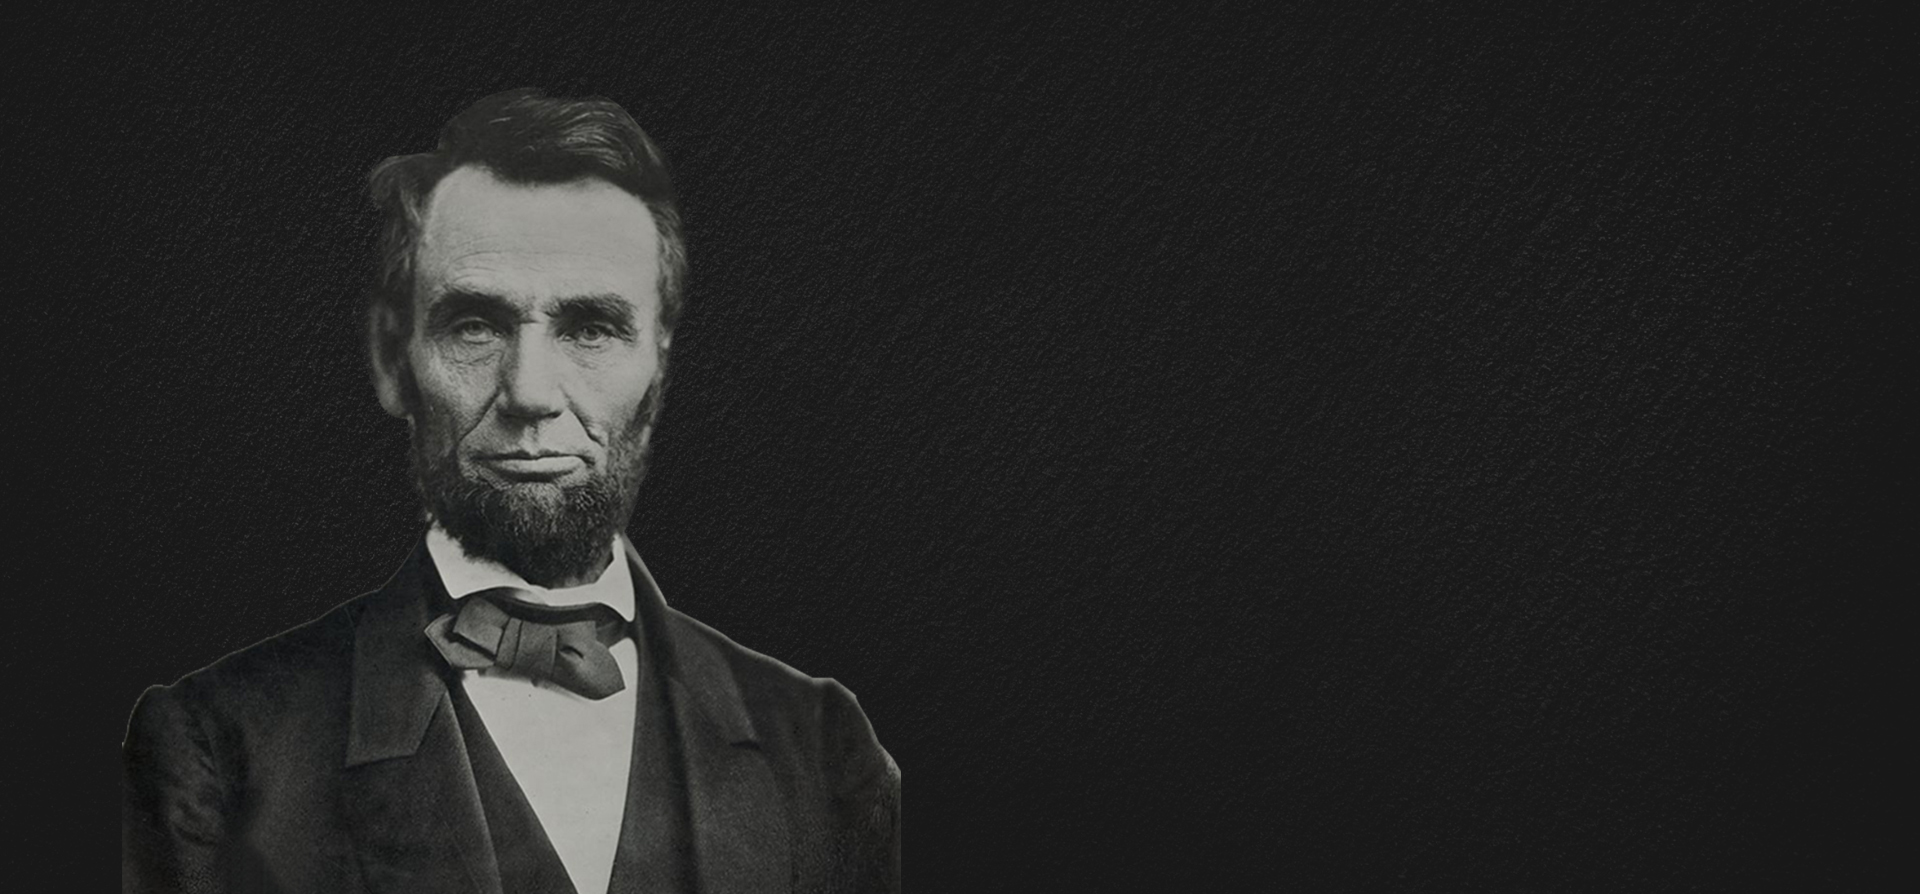 - President Abraham Lincoln